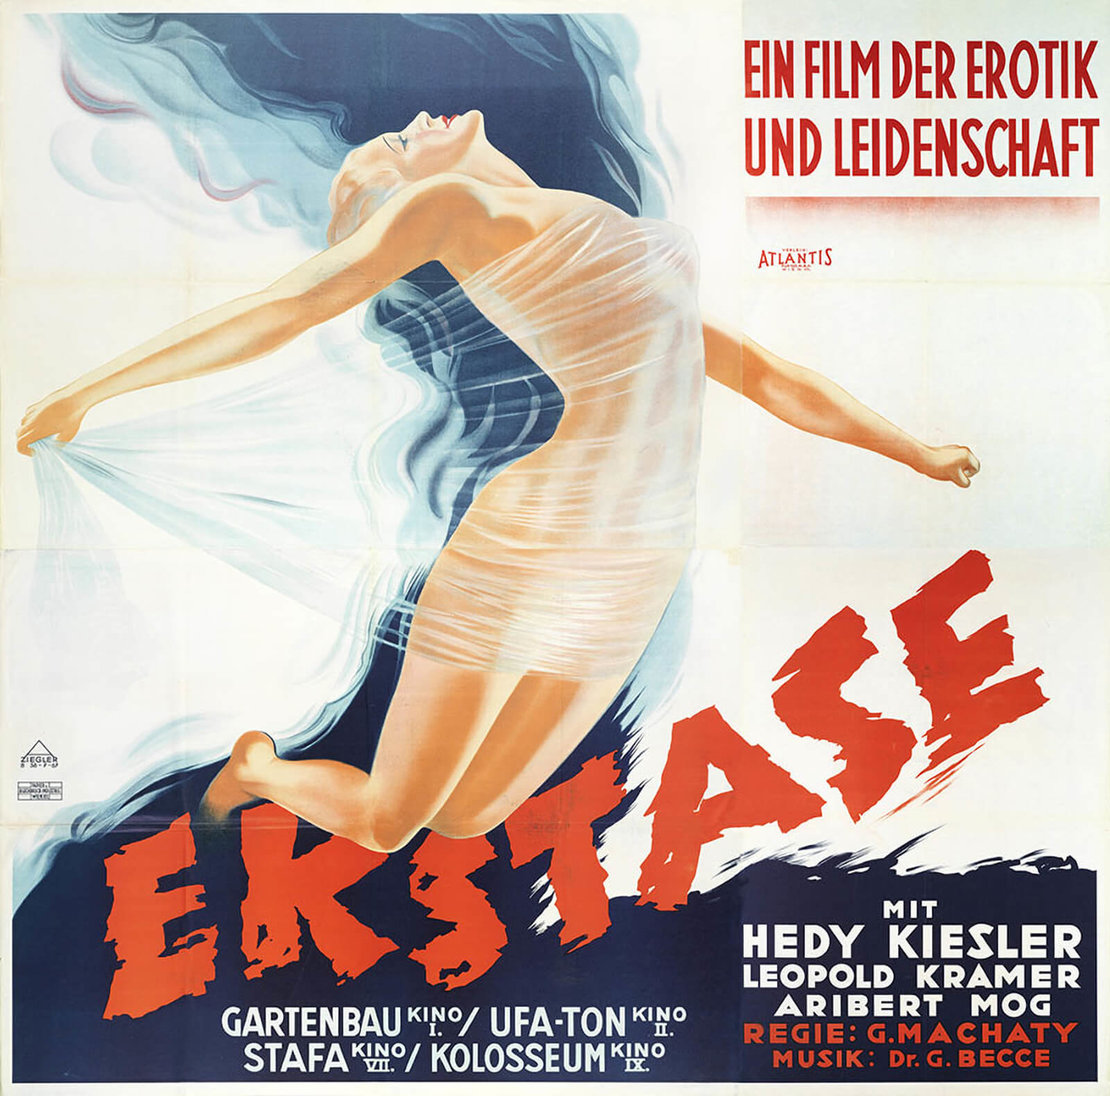 Das von Anton Ziegler gestaltete Plakat zum Film „Ekstase“ mit Hedy Kiesler-Lamarr (1933) wurde in manchen Städten von der Polizei unter Berufung auf eine Notverordnung aus Gründen „der öffentlichen Sittlichkeit“ entfernt. Wienbibliothek im Rathaus, Plakatsammlung, P-41833 